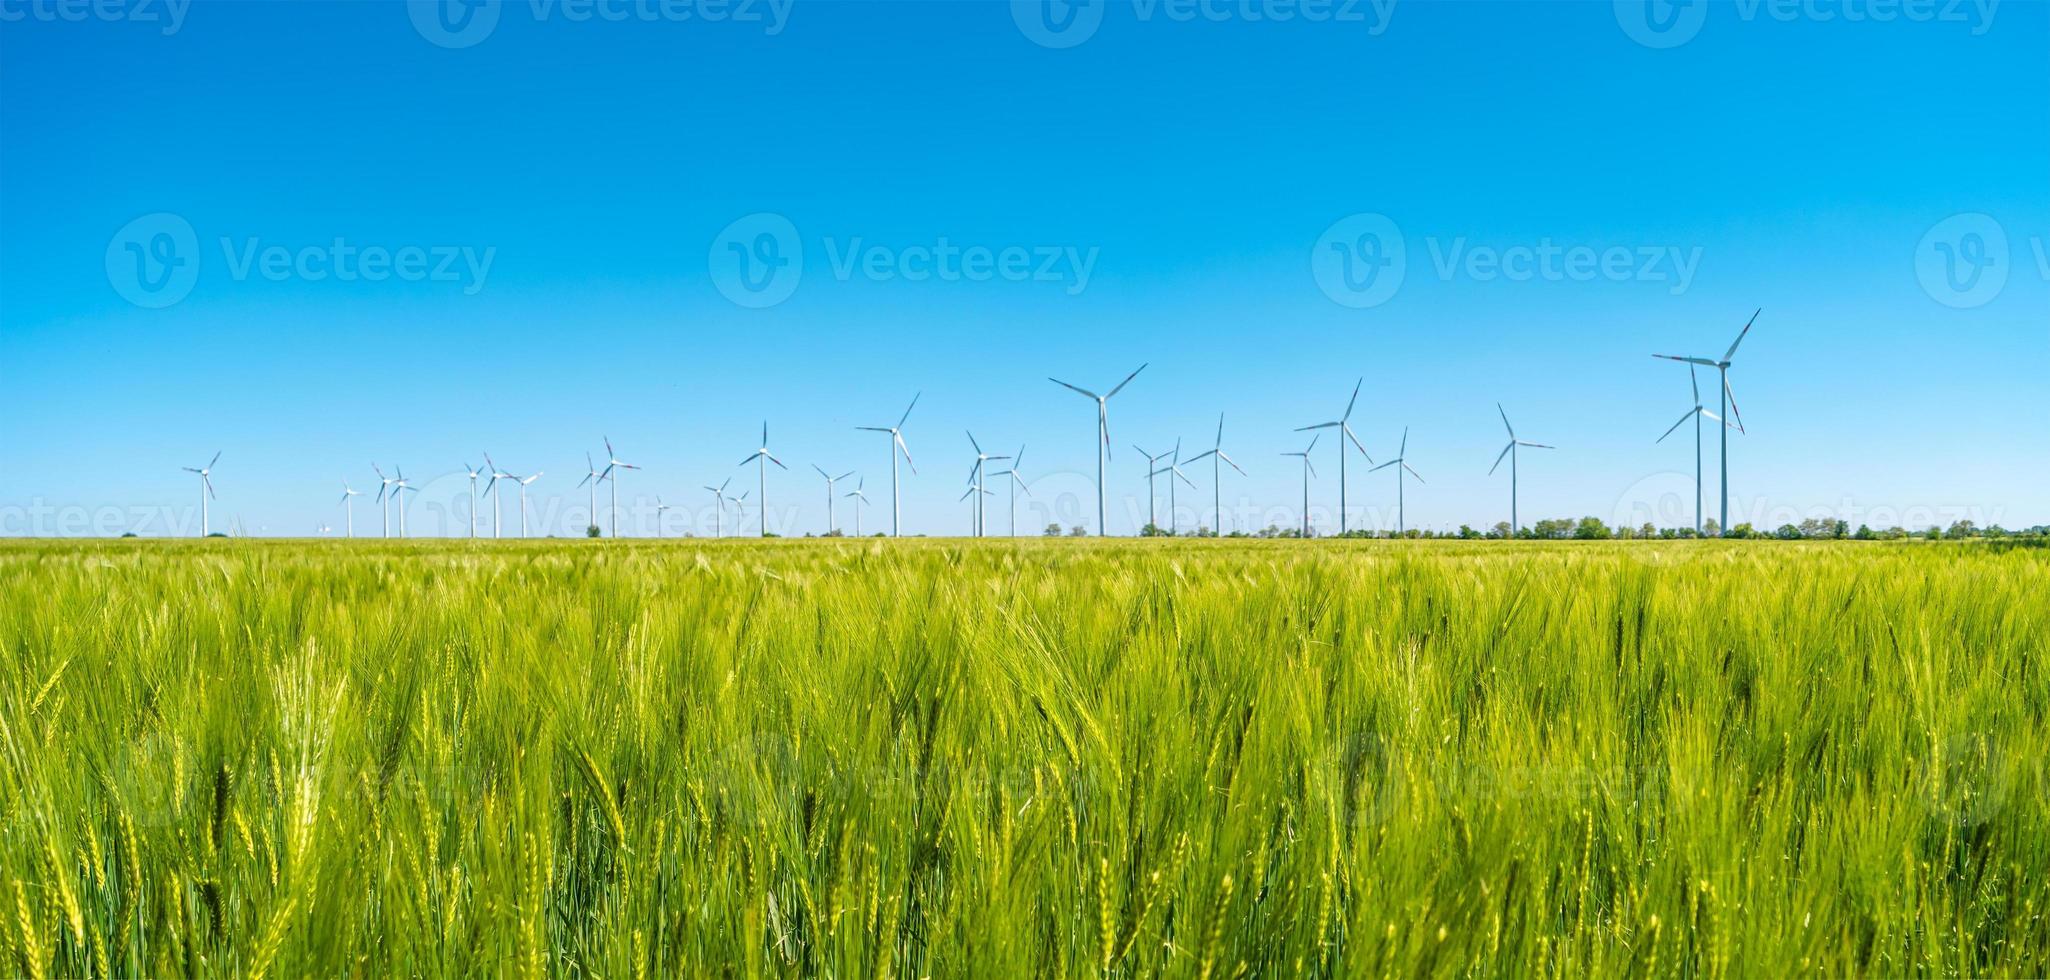 panoramautsikt över vackert gårdslandskap med grönt vetefält och vindkraftverk för att producera grön energi i Tyskland, vår, blå dramatisk regnig himmel och solig dag. foto